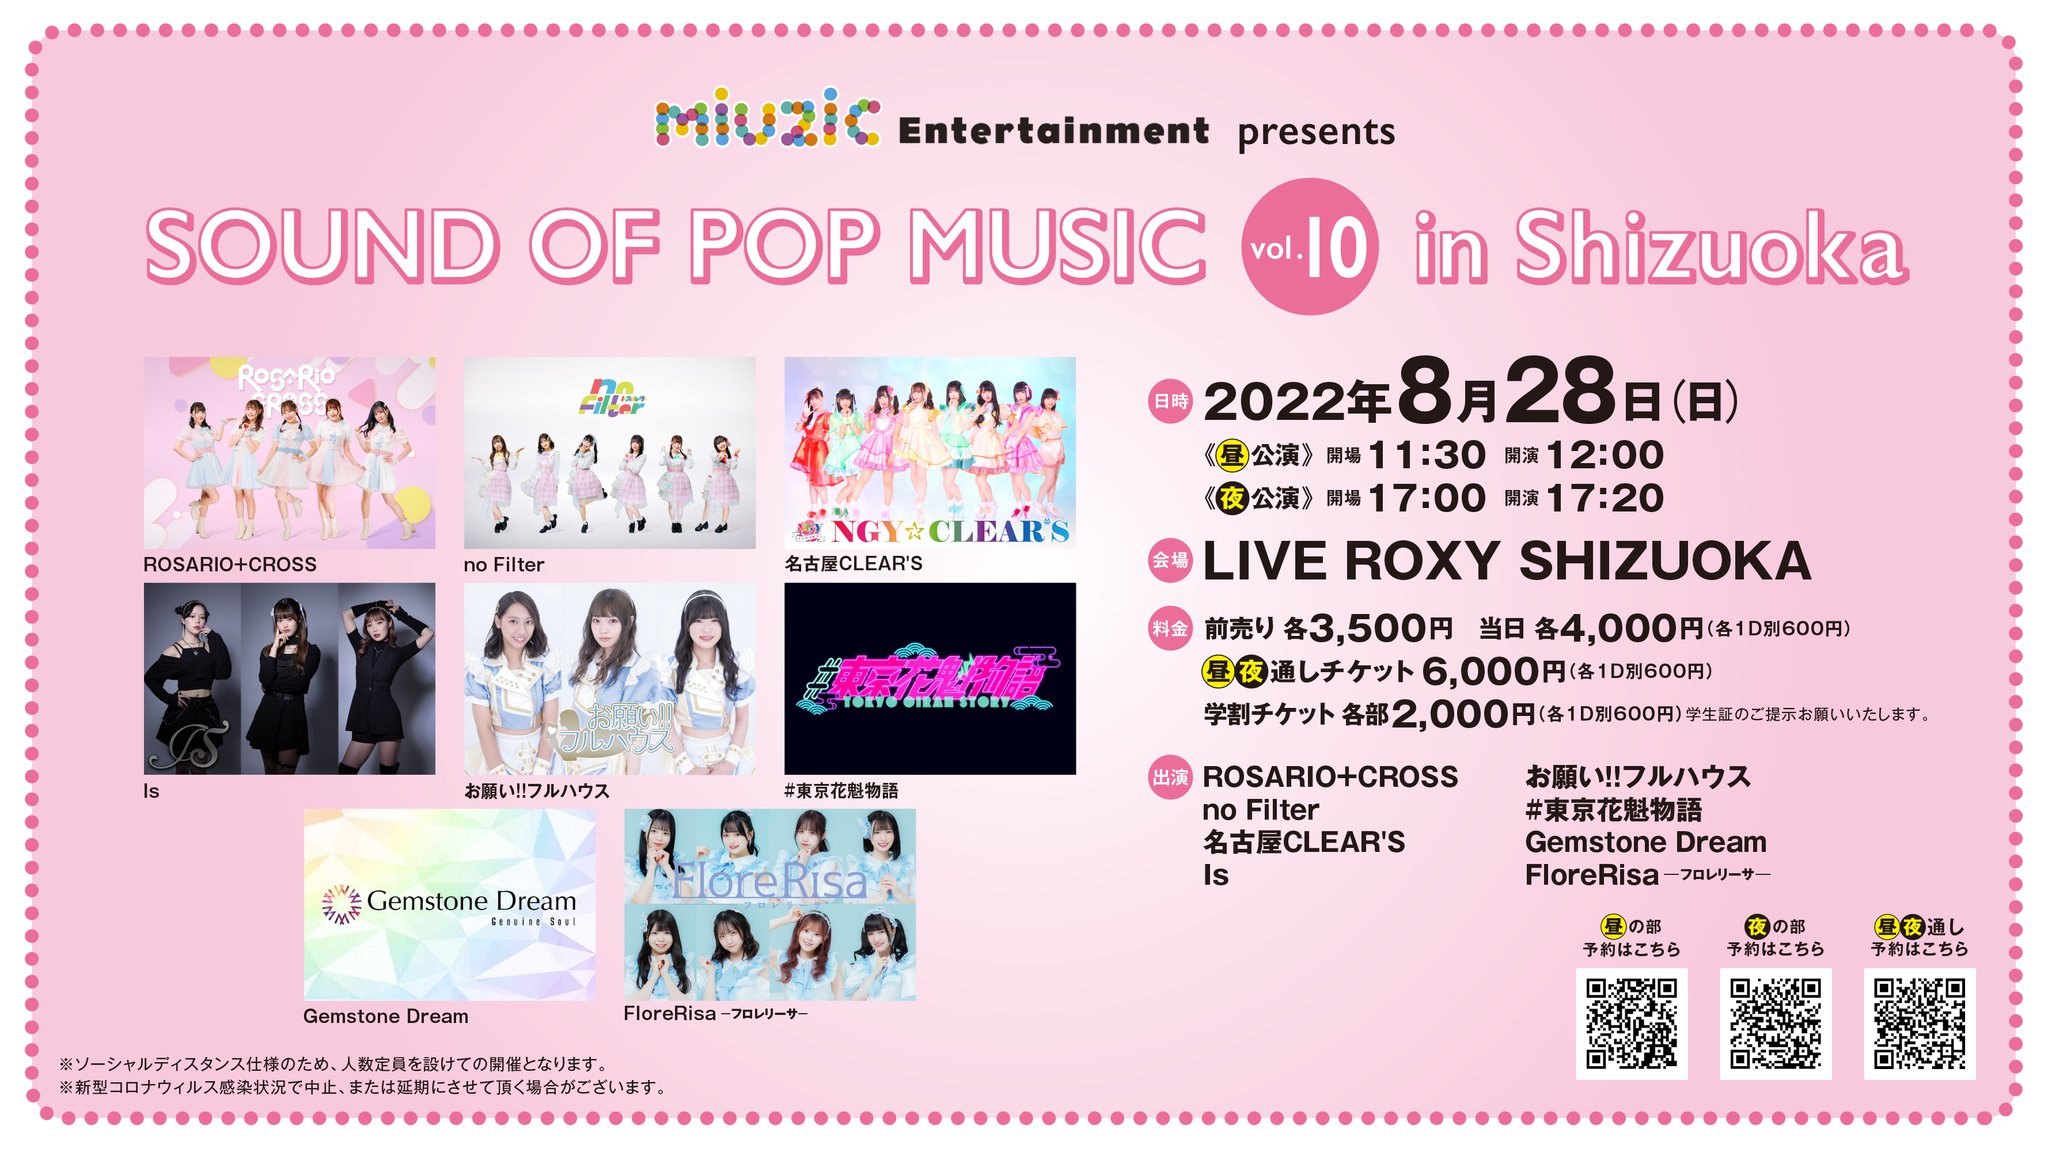 《昼公演》8/28(日) miuzic Entertainment presents 「SOUND OF POP MUSIC vol.10 in Shizuoka」